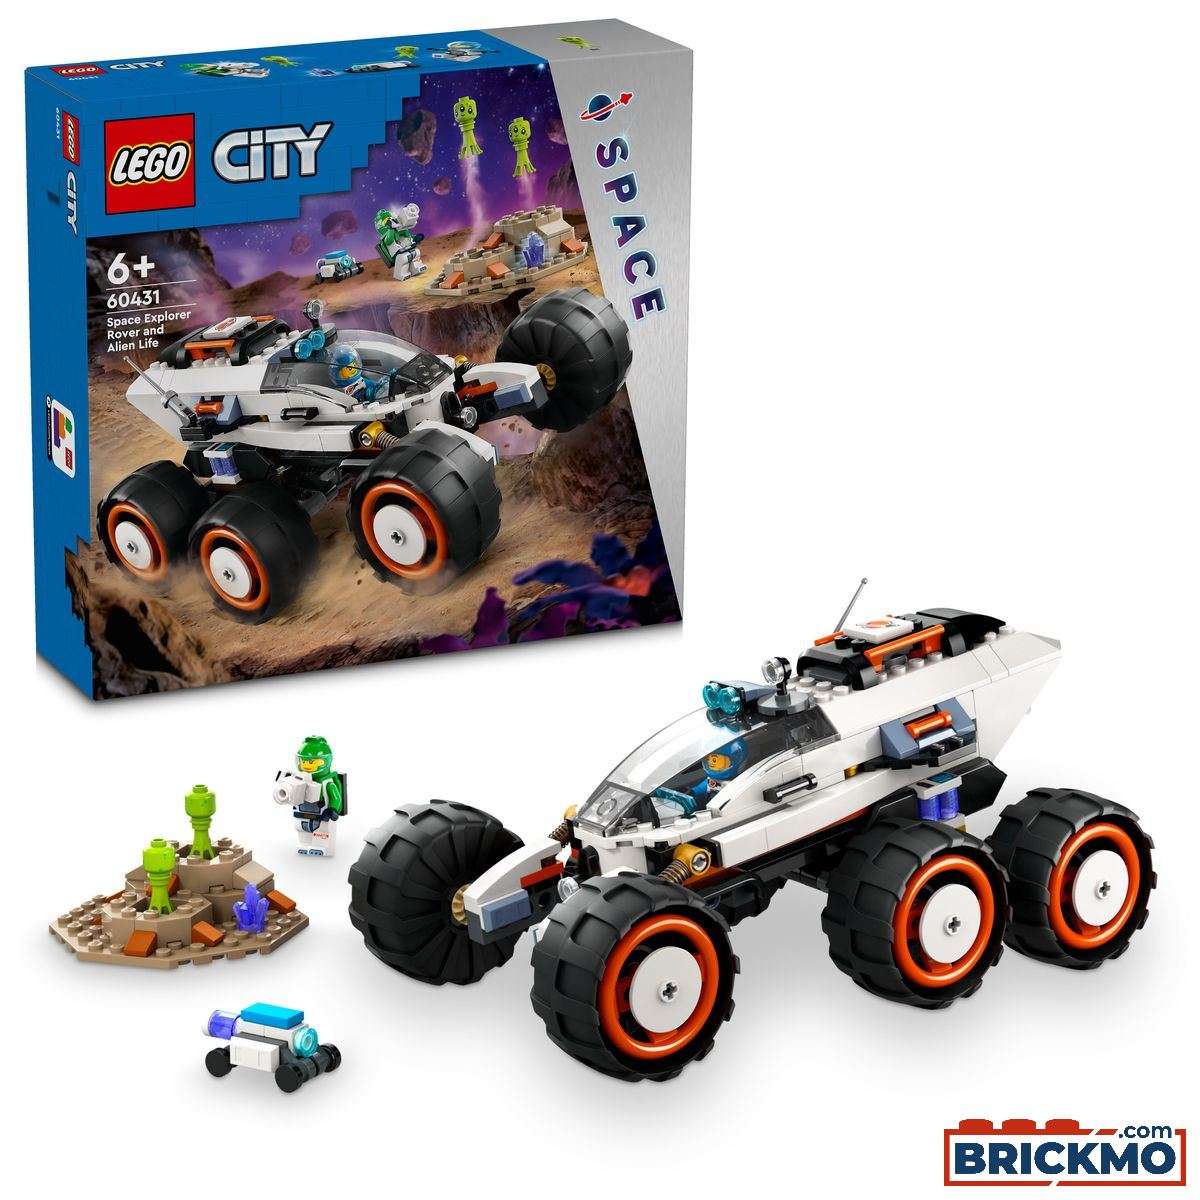 LEGO City 60431 Carro de Exploração Espacial e Vida Extraterrestre 60431